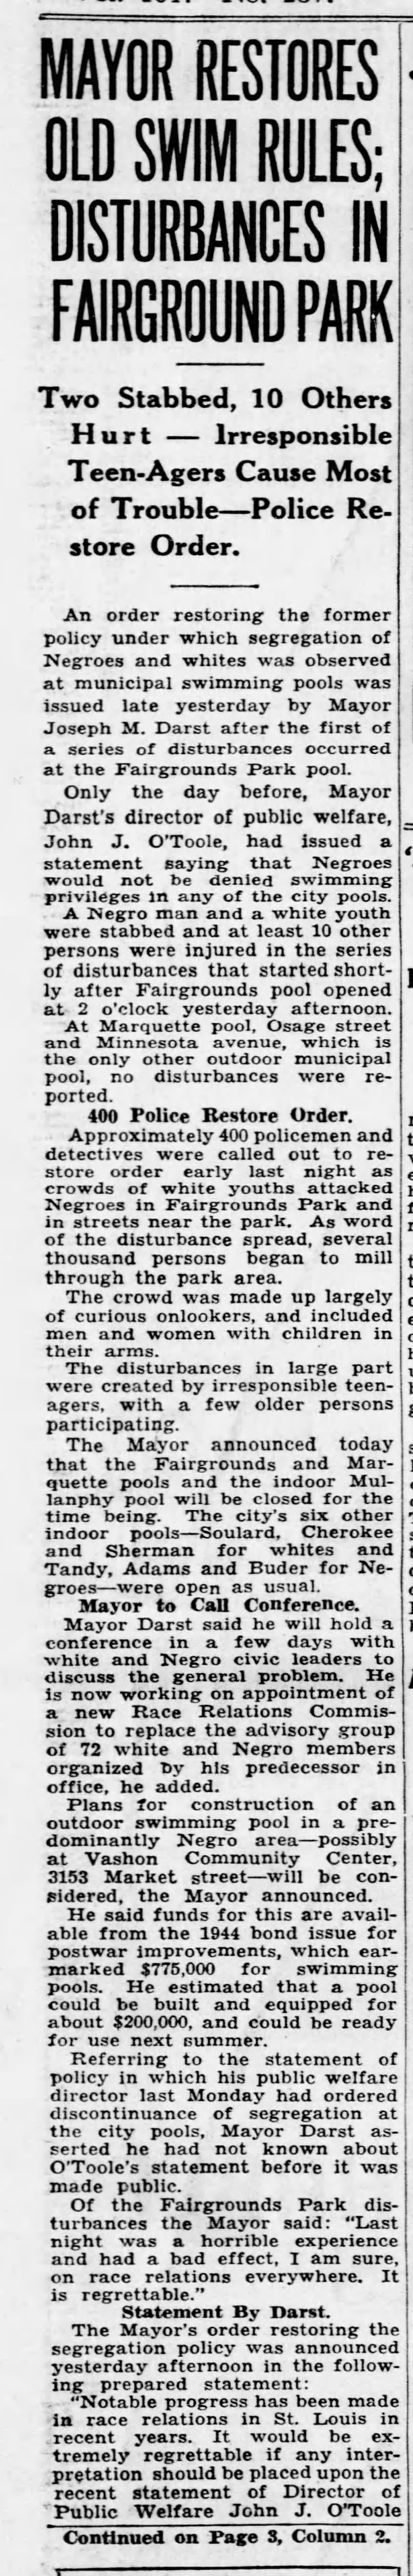 1949 Fairgrounds Park Riot